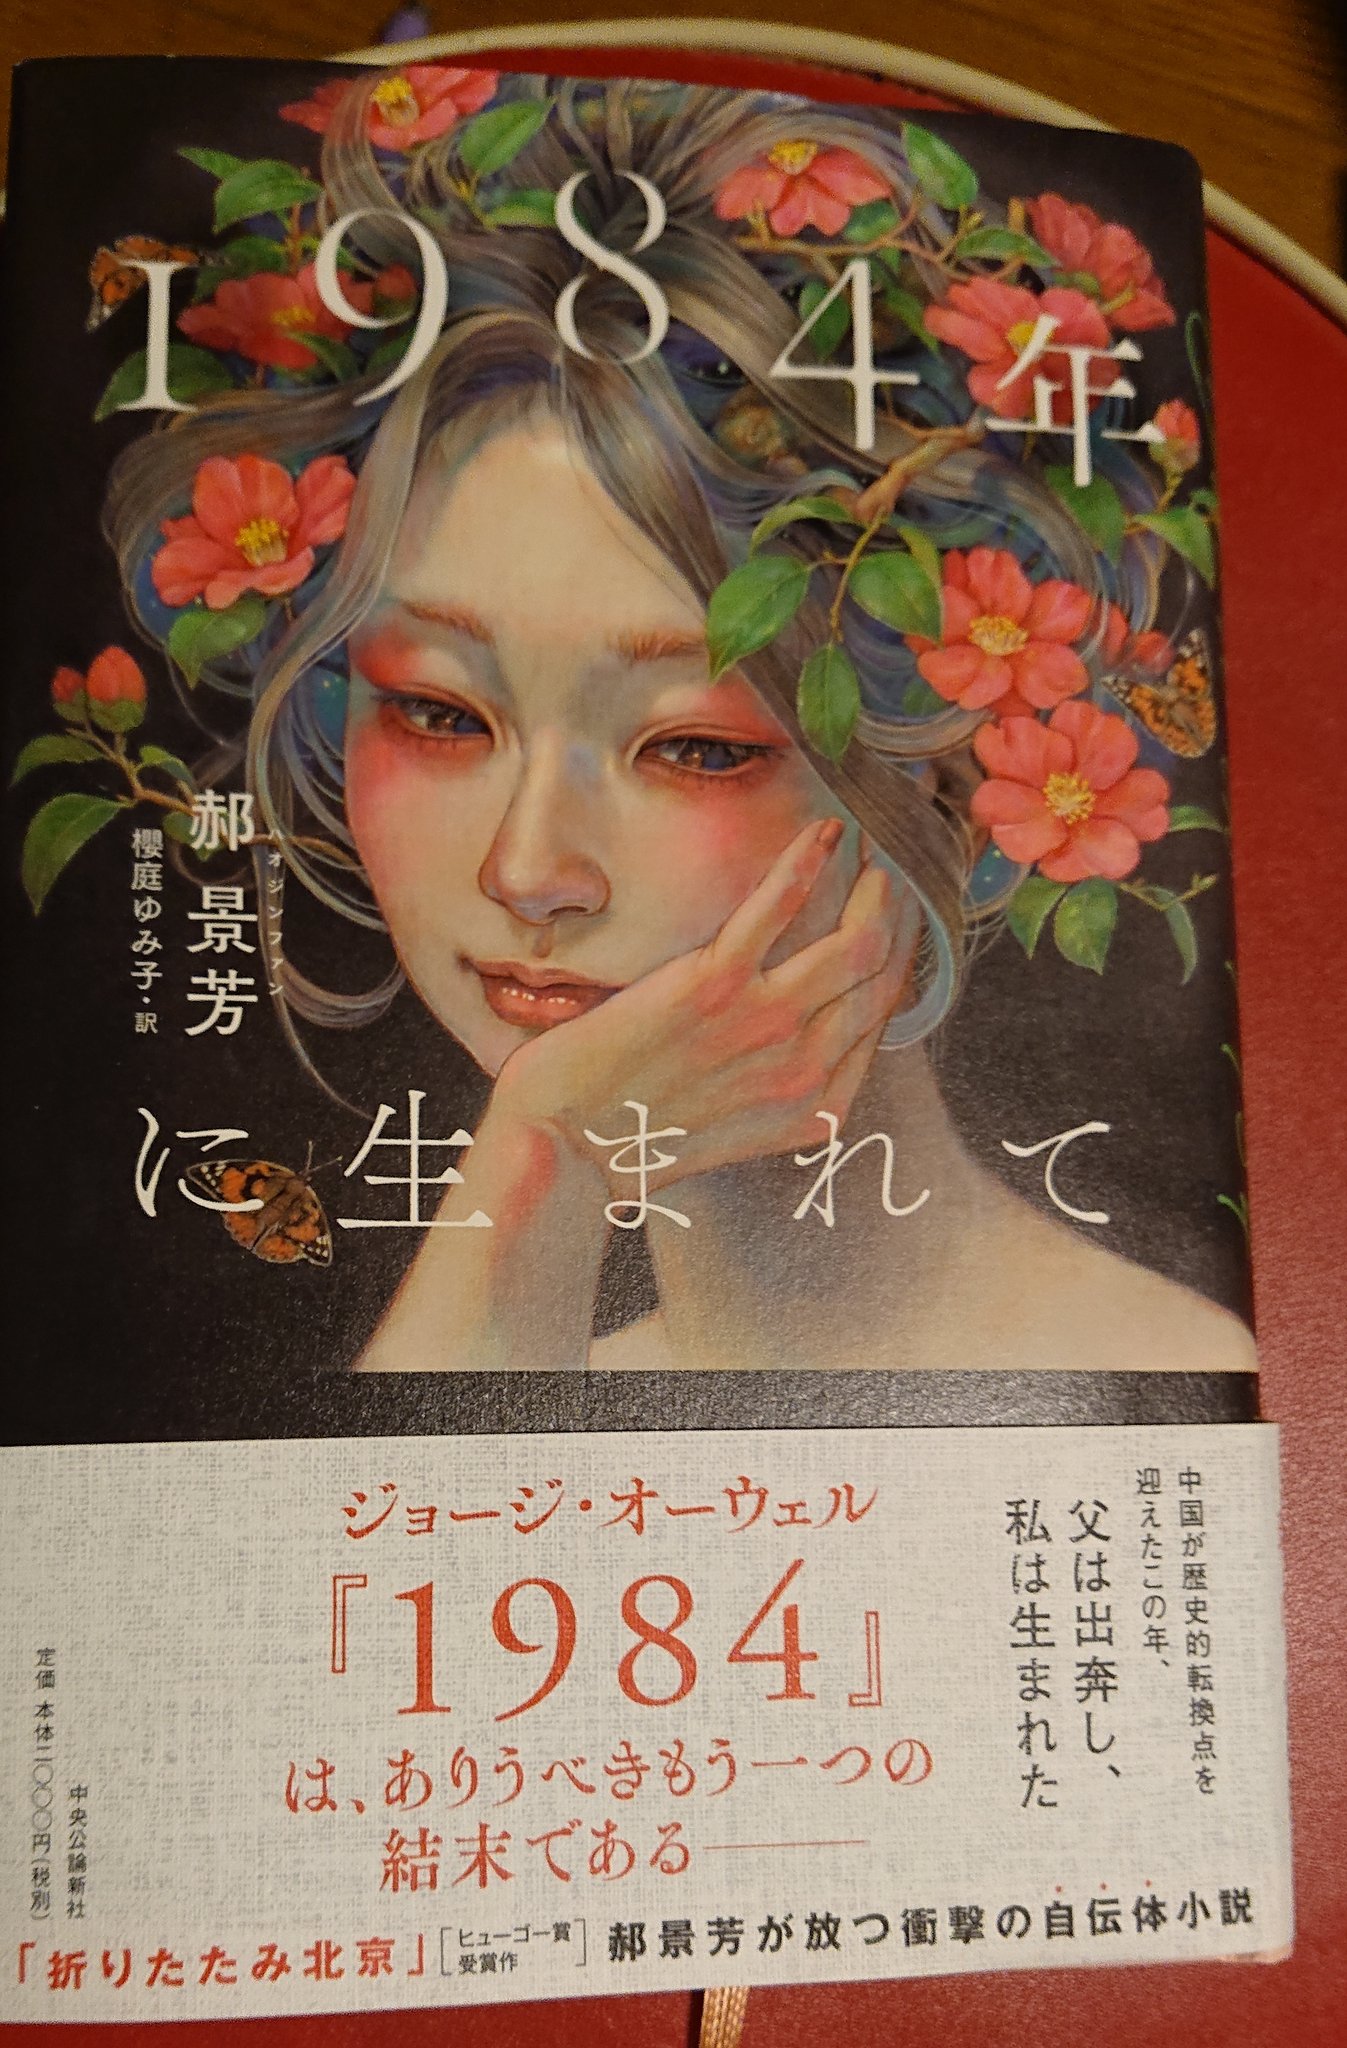 Romms 1984年に生まれて 郝景芳 ハオジンファン を読む 日本で組まれる中国sf 華文sfのアンソロジーでは超常連の作家さんだね そんな人が 1984年 でいくわけでしょ ドギツい中国ディストピアでも 一席ぶつの と思ったらこれが全然 しかし これが